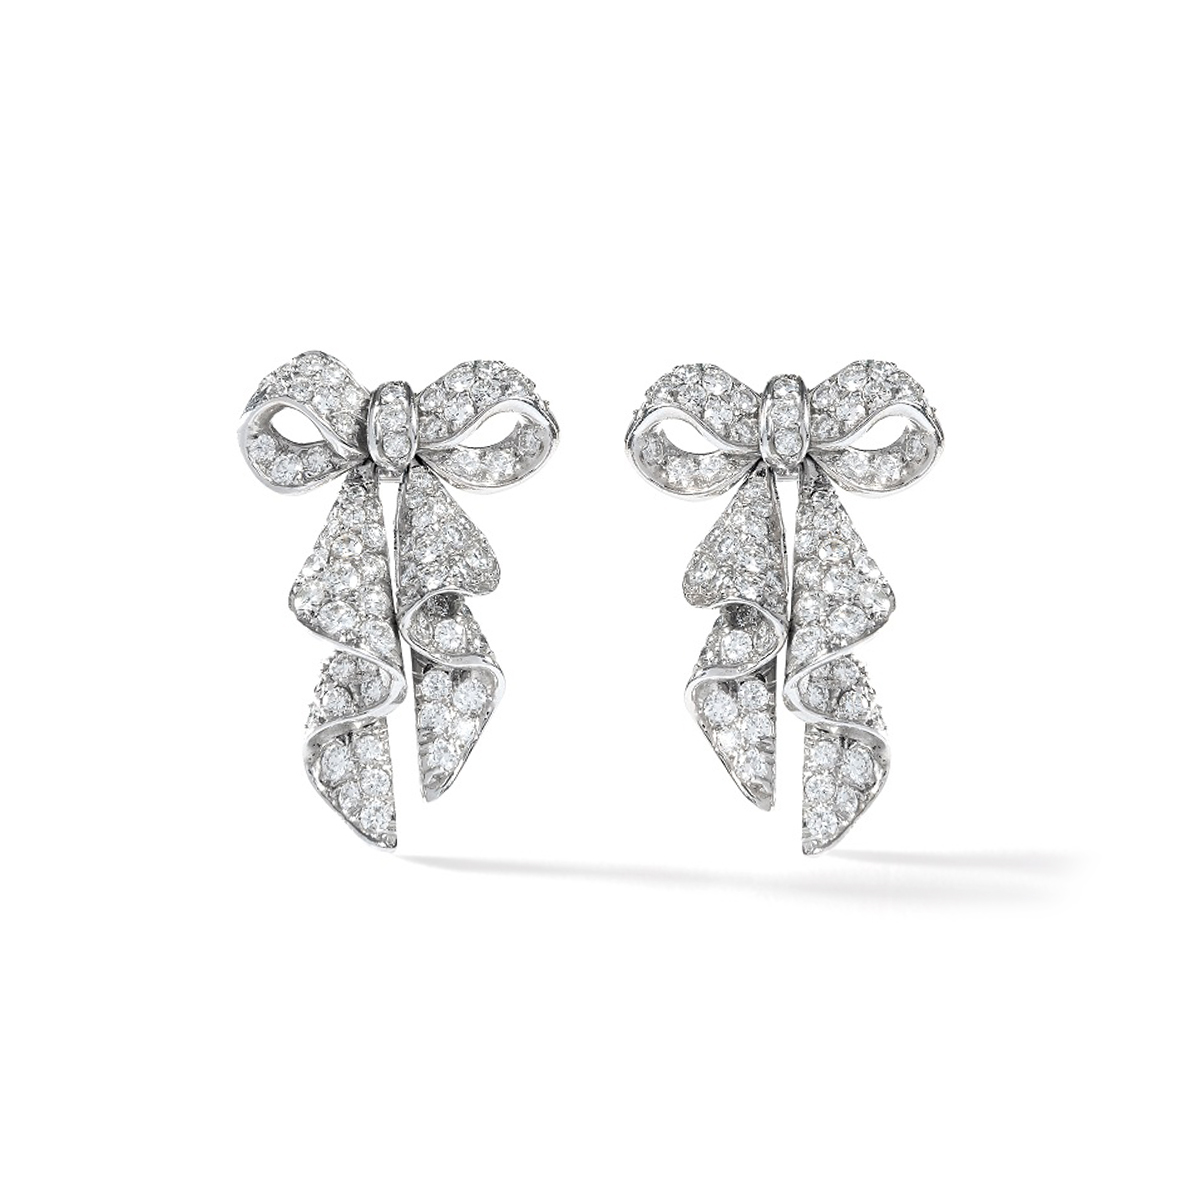 Diamond gold 18k bow earrings flower engagement bridal wedding